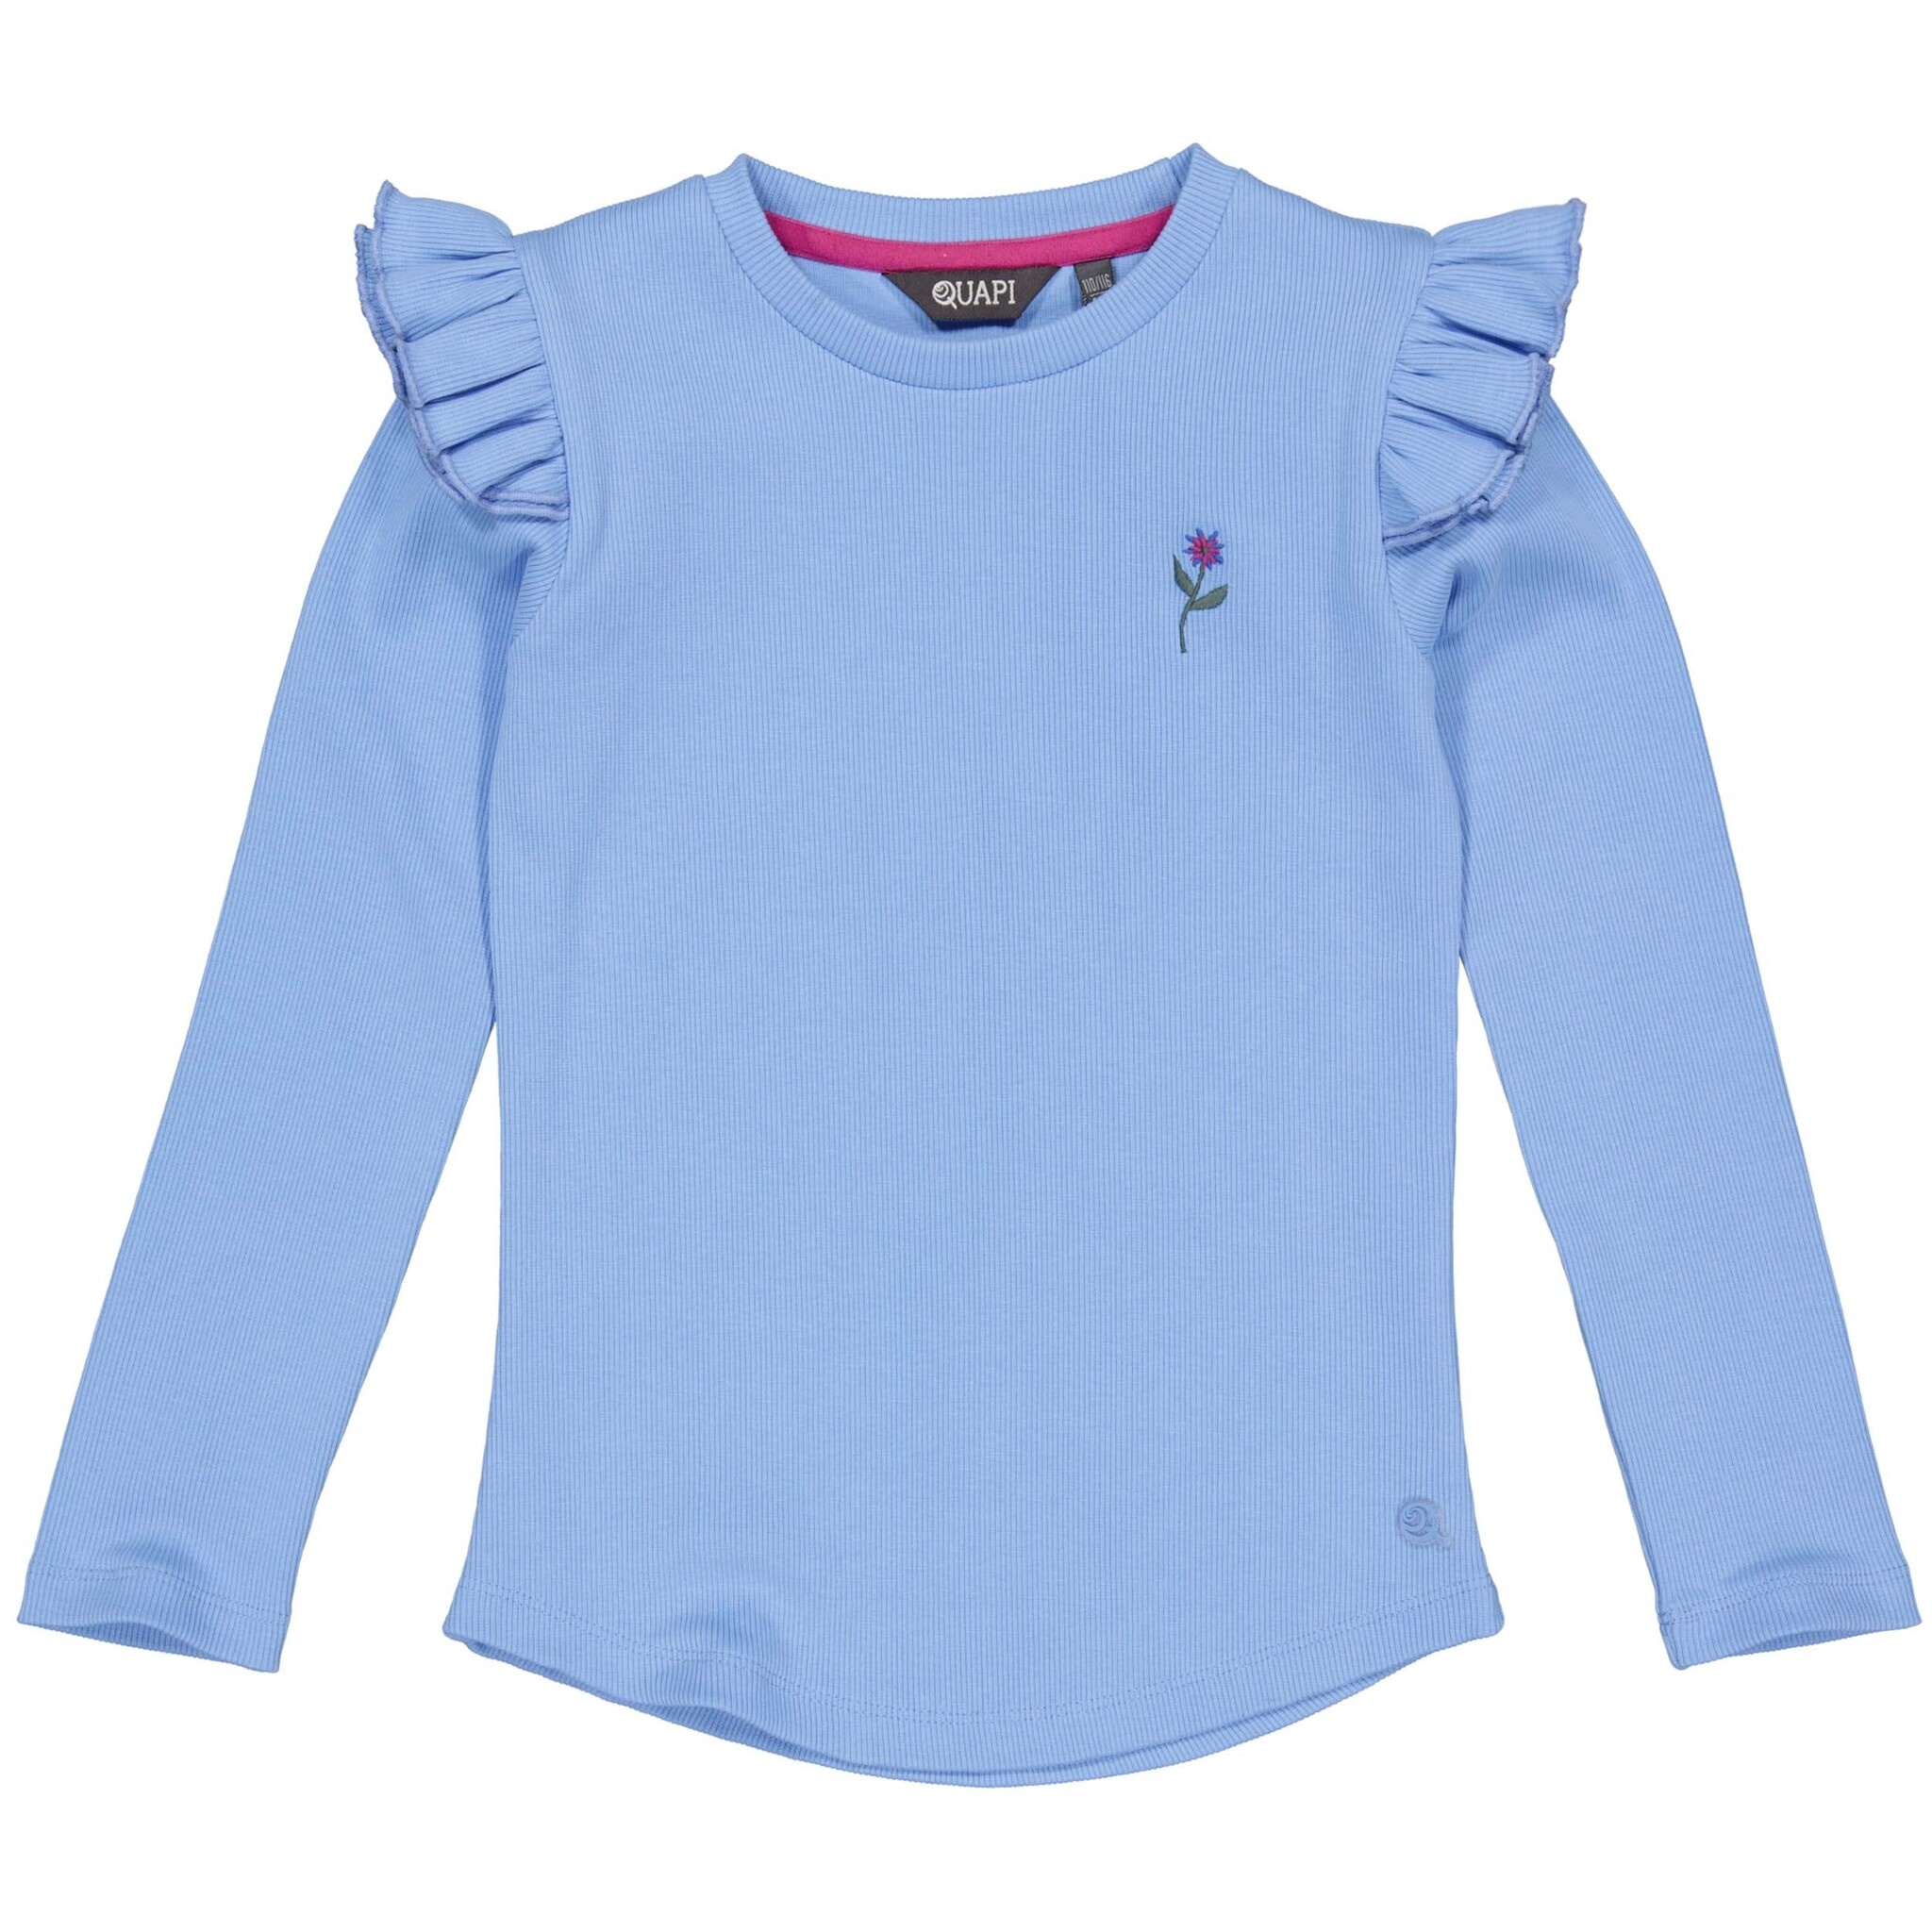 Quapi Meisjes shirt - Alexis - Robbia blauw